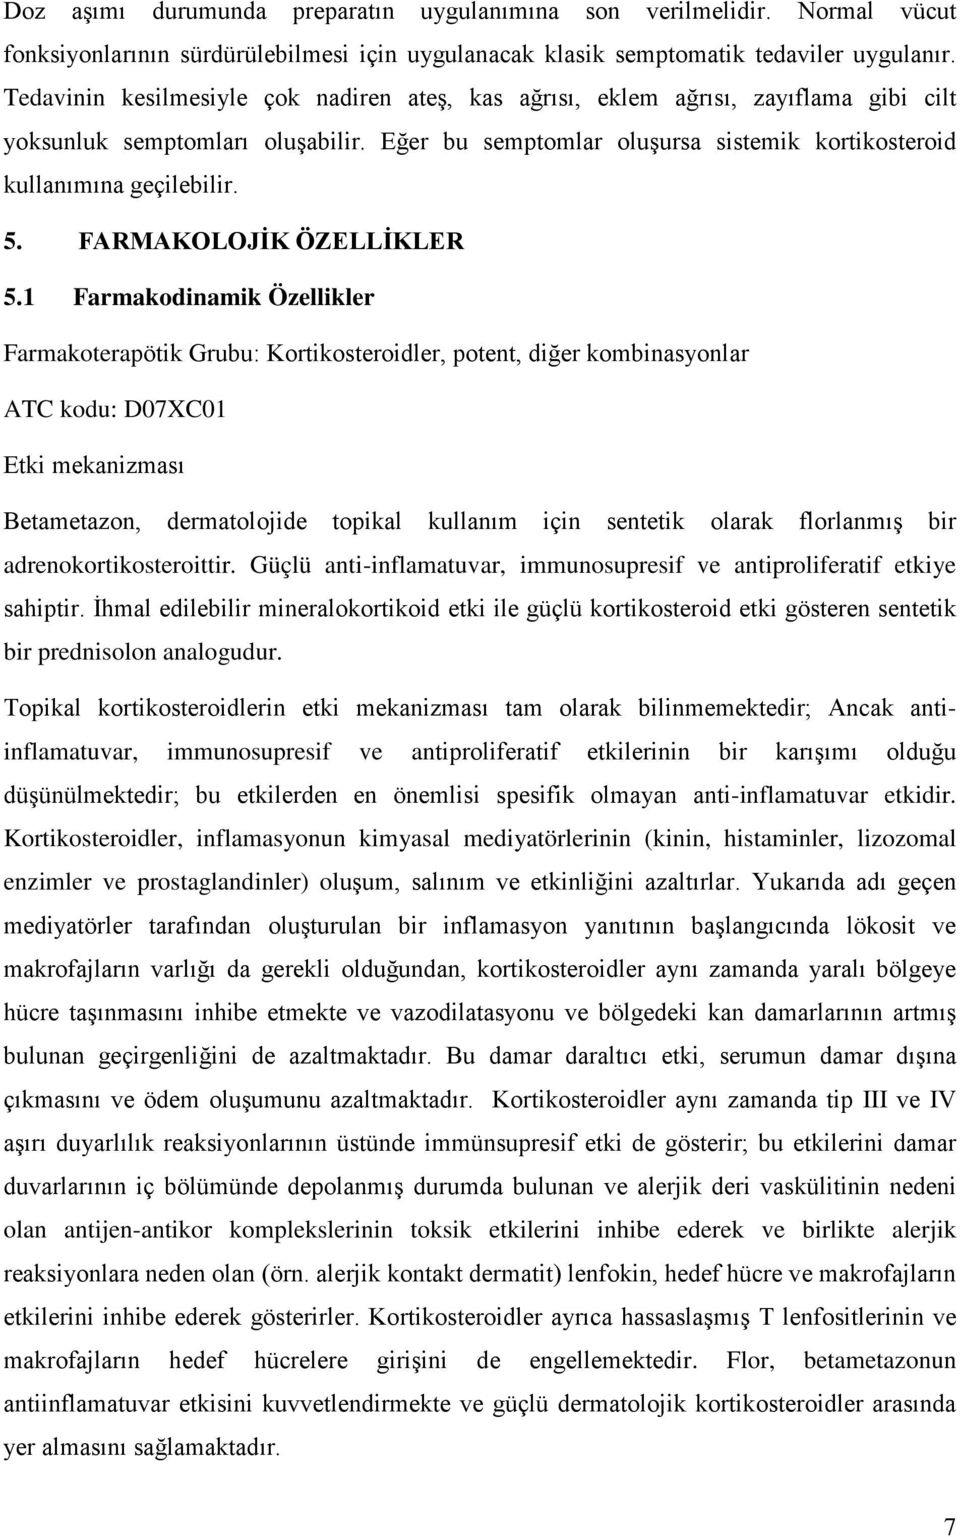 FARMAKOLOJİK ÖZELLİKLER 5.